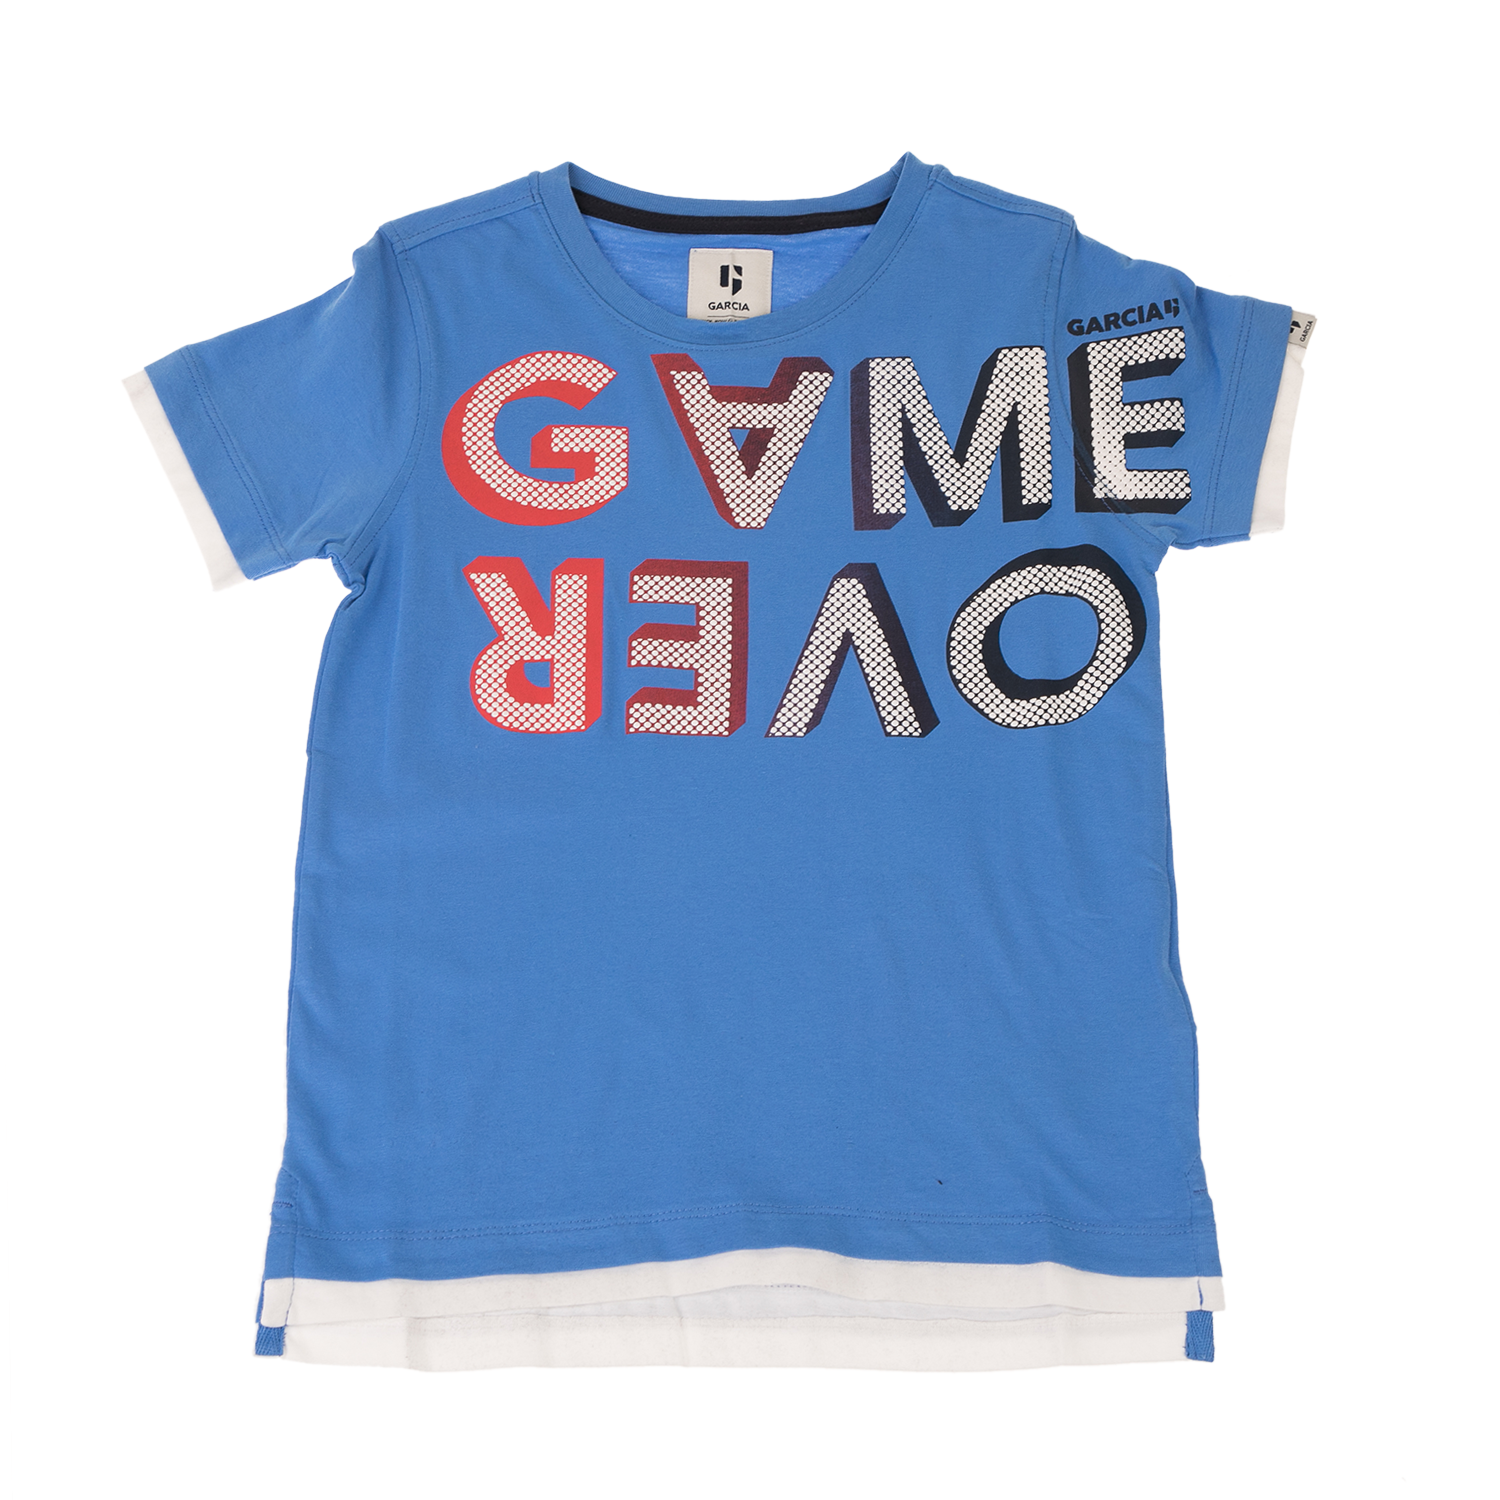 Παιδικά/Boys/Ρούχα/Μπλούζες Κοντομάνικες-Αμάνικες GARCIA JEANS - Παιδικό t-shirt για αγόρια GARCIA JEANS μπλε